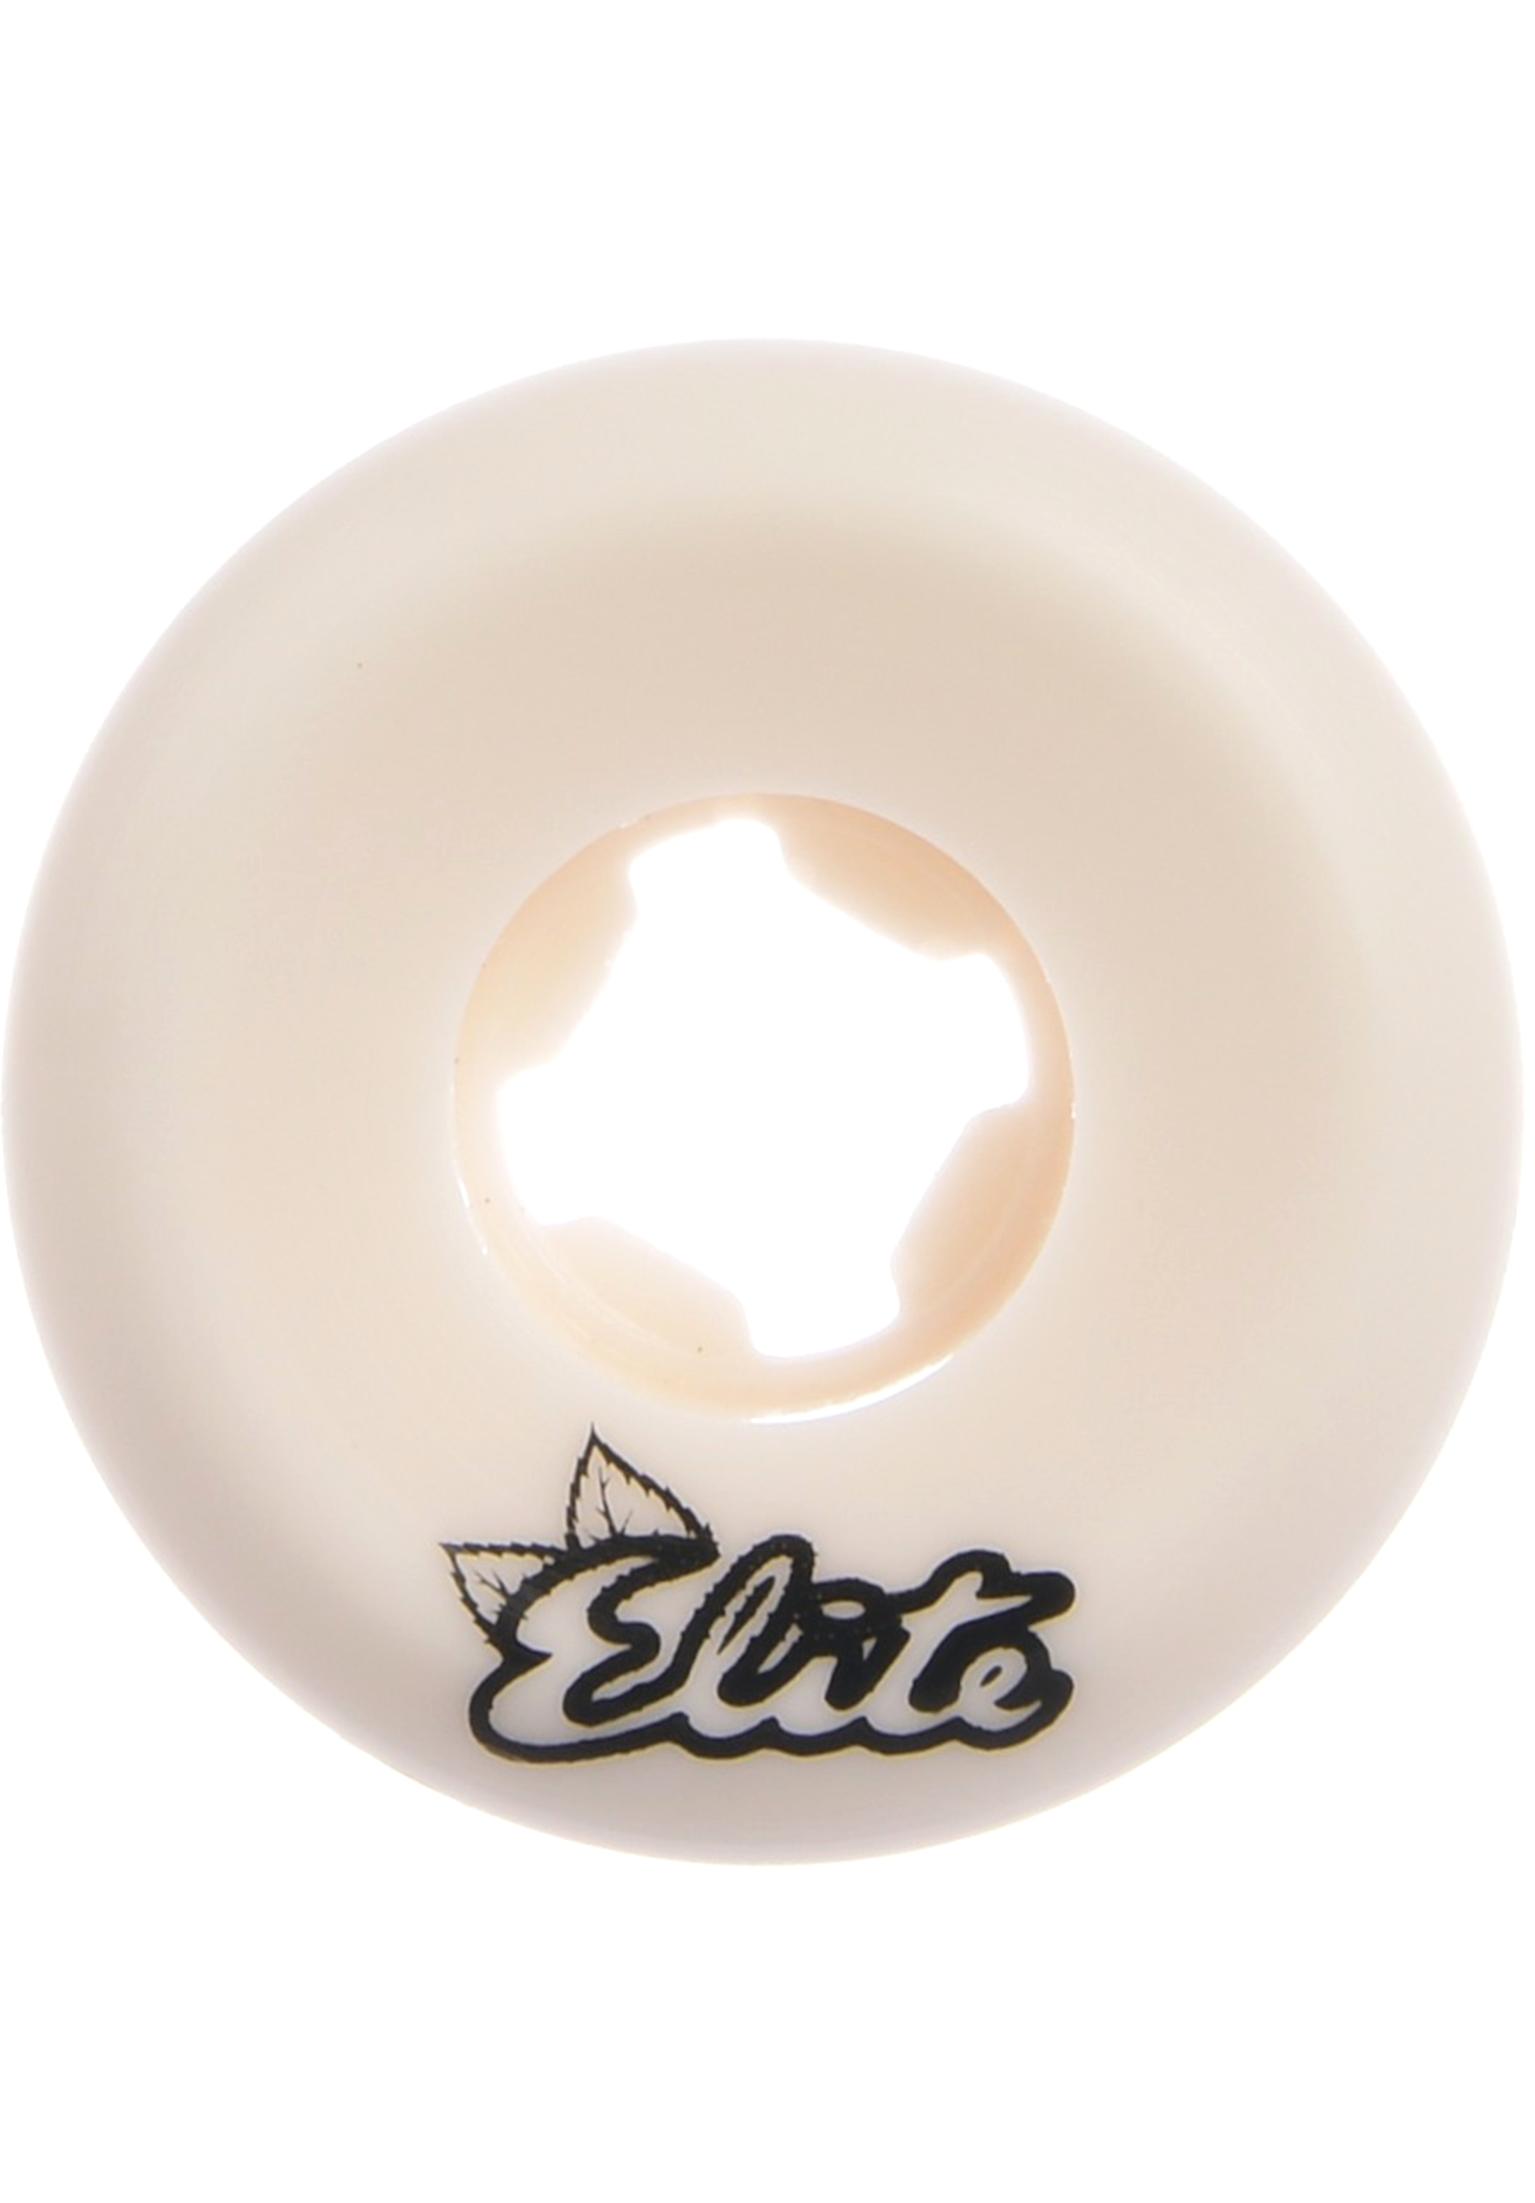 OJ Wheels 53mm Elite Hardline Wide 99A skateboardwielen white